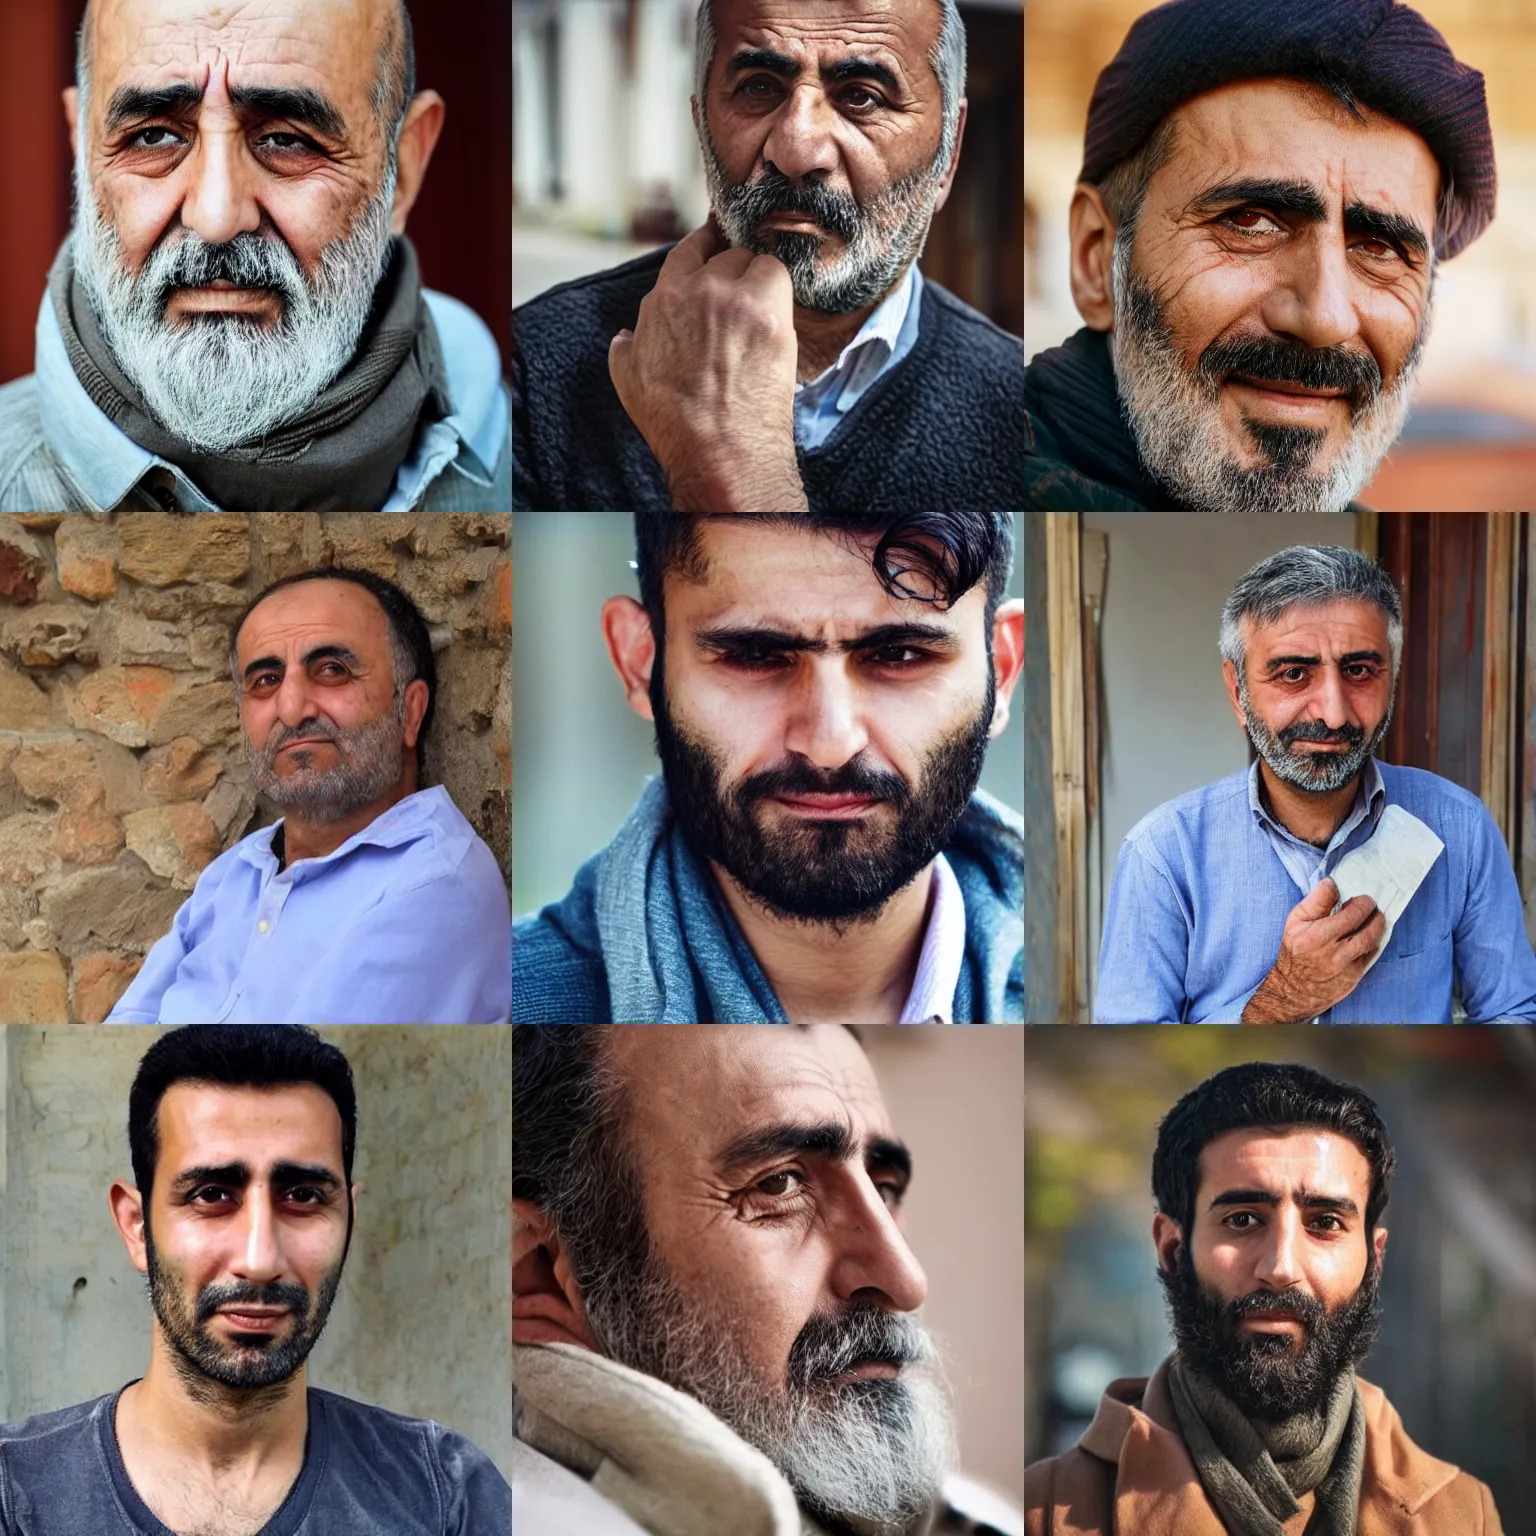 typical turkish man